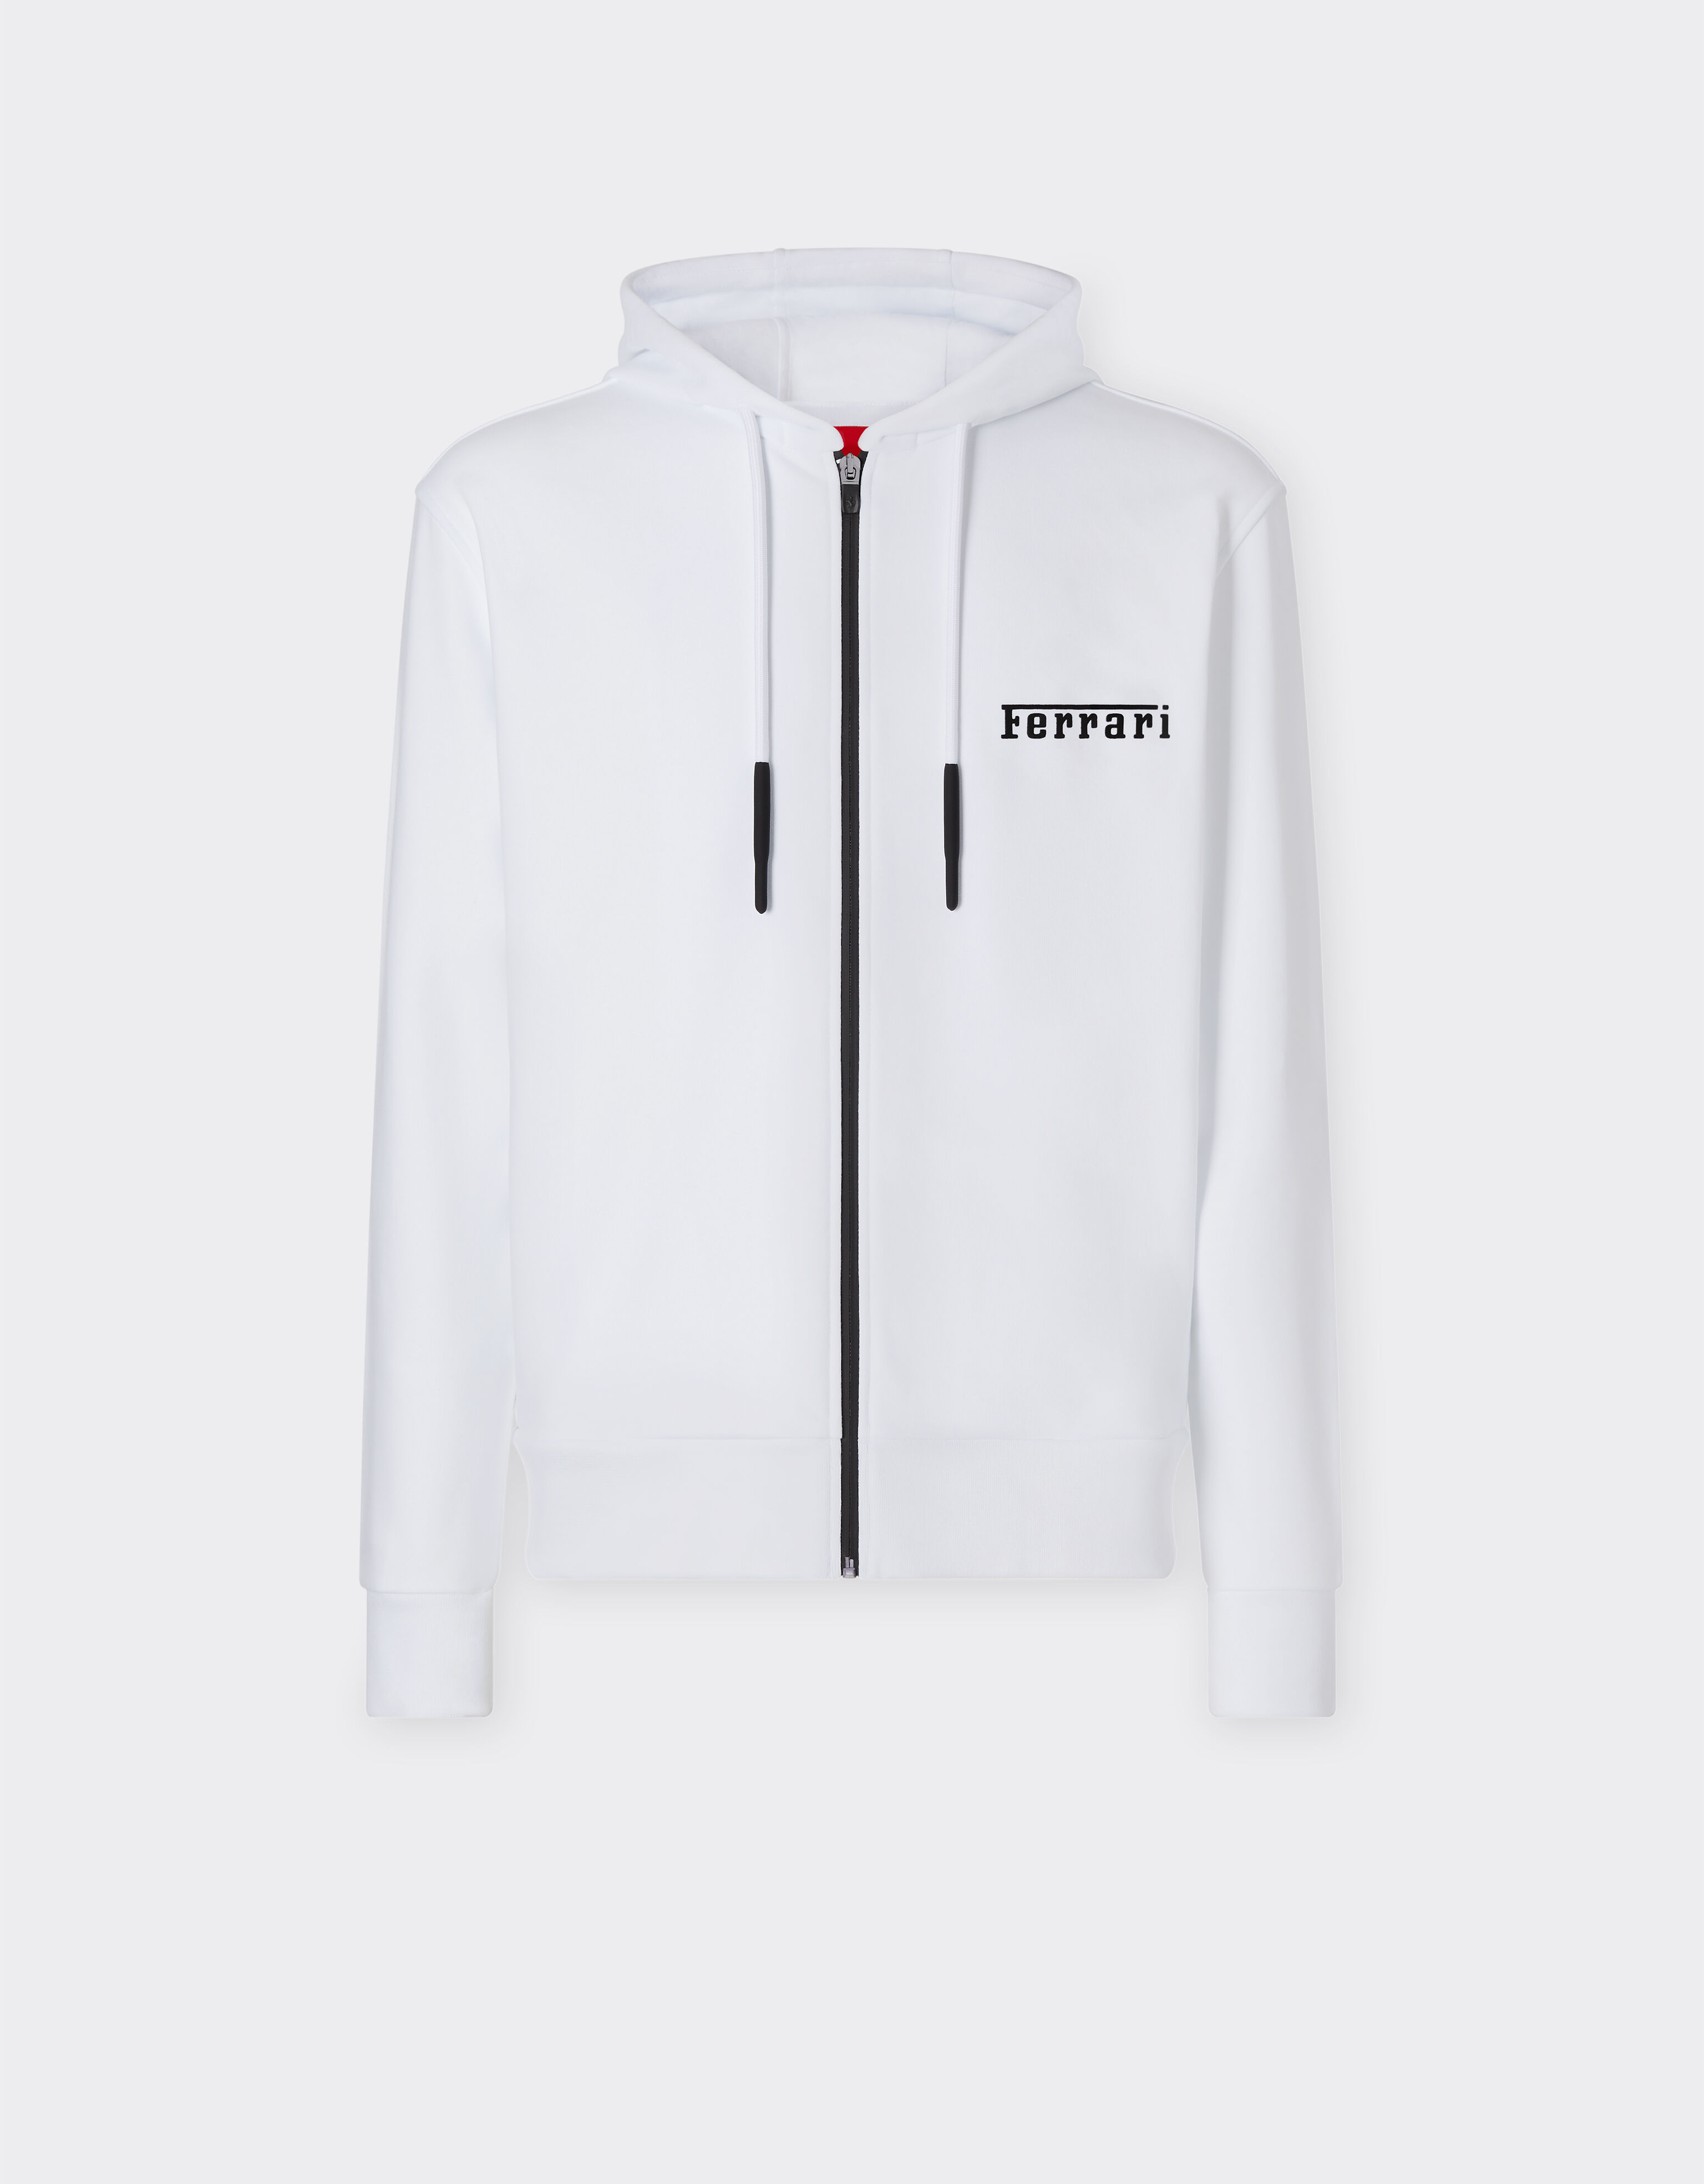 Ferrari Sweatshirt mit Kapuze und Ferrari-Logo Optisch Weiß 20452f